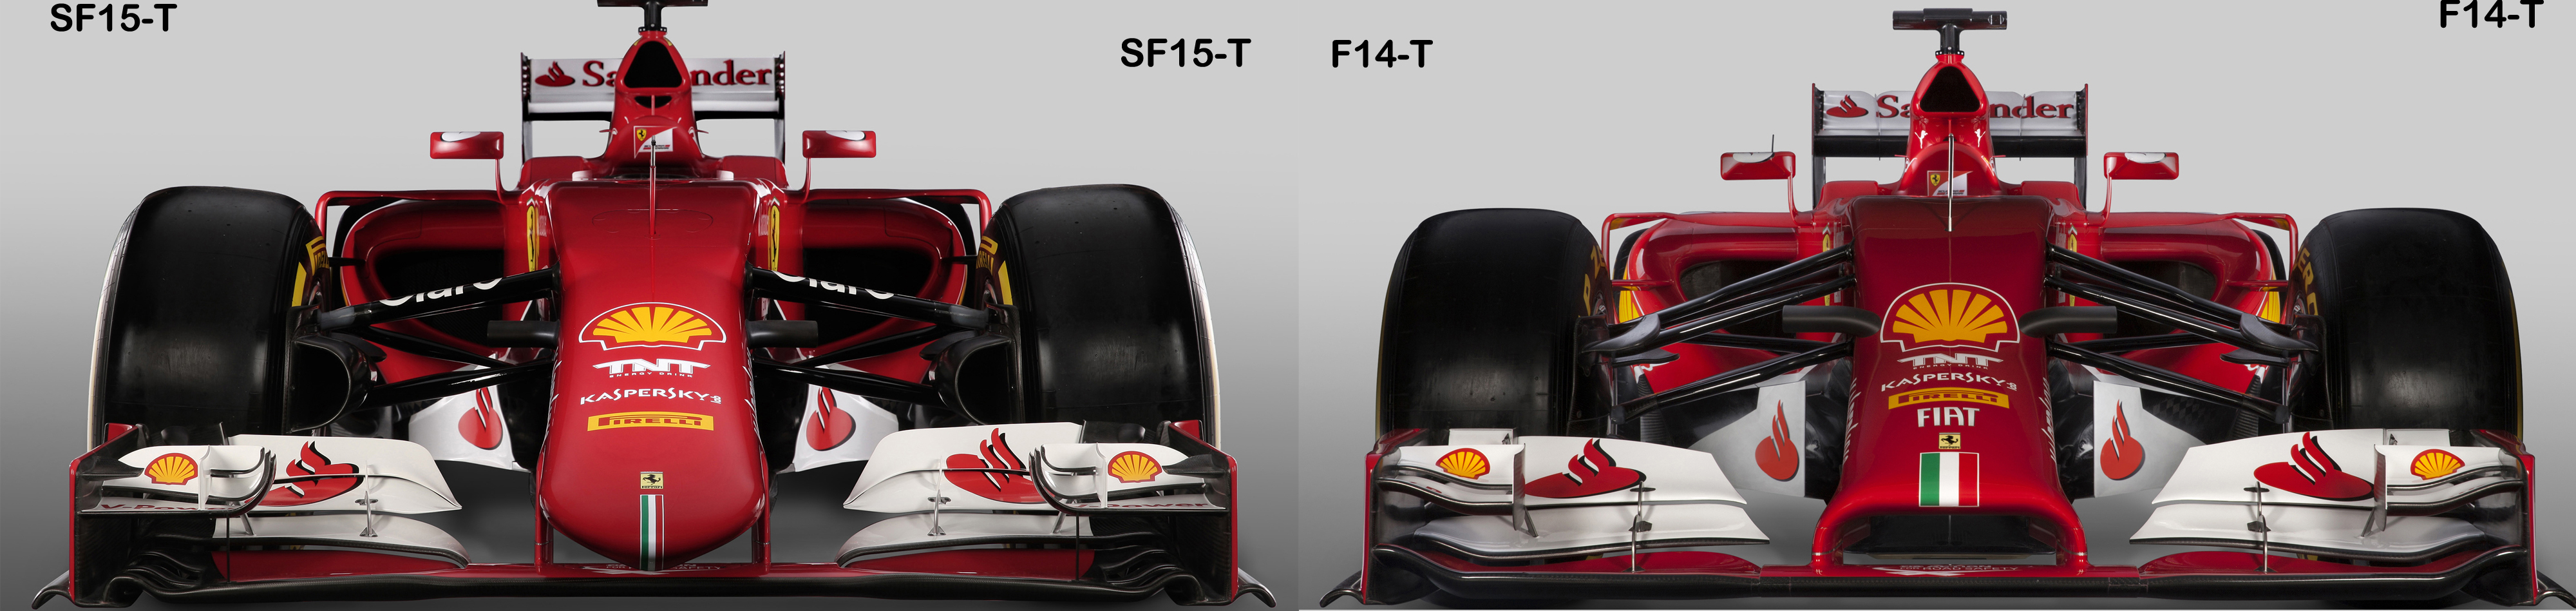 SF15-T-vs-F14T-front